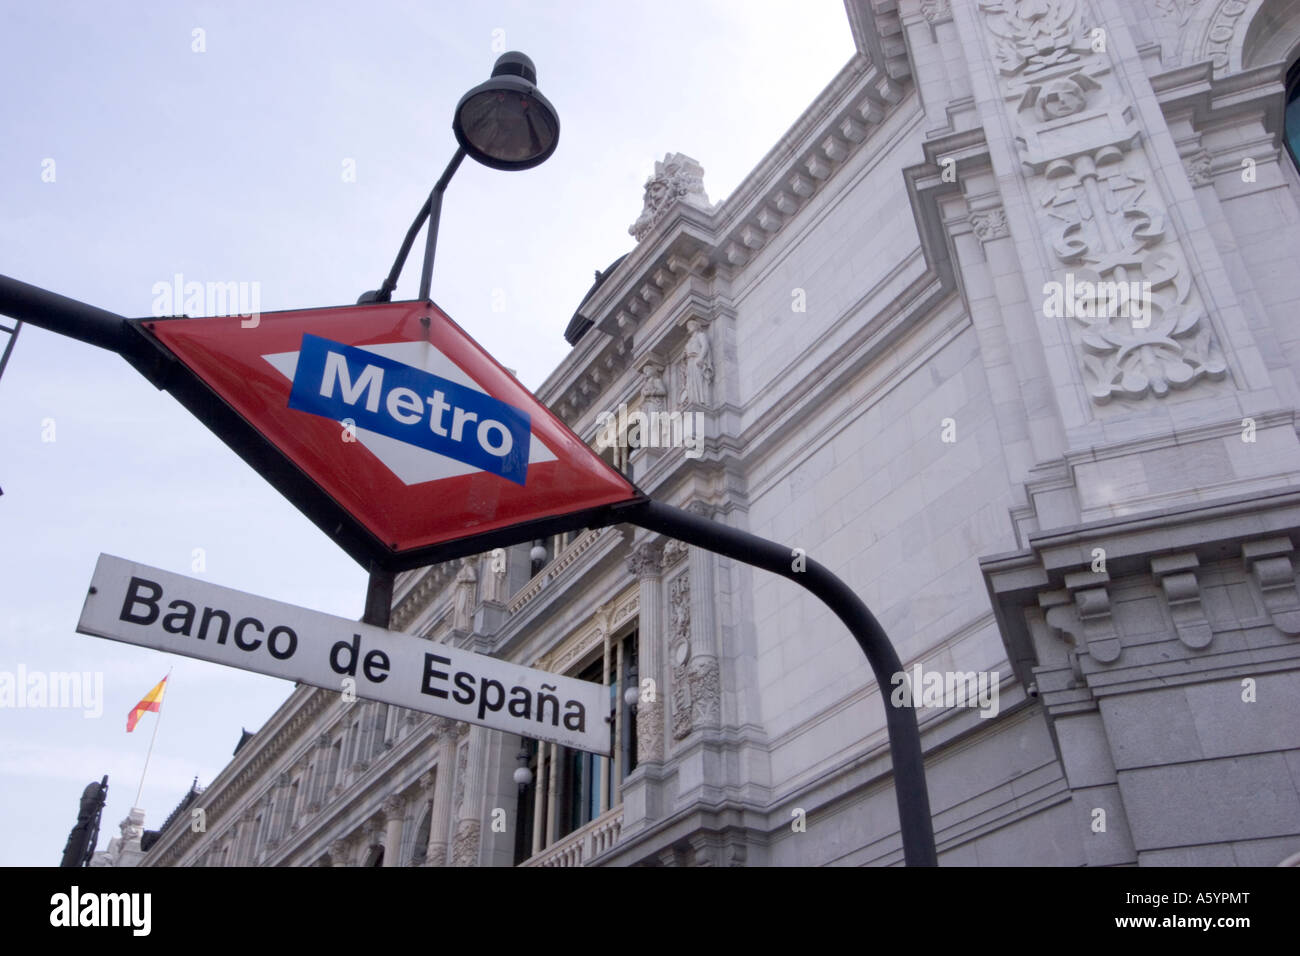 Banco de espana Metro Madrid underground tube service sign on outside of station Stock Photo